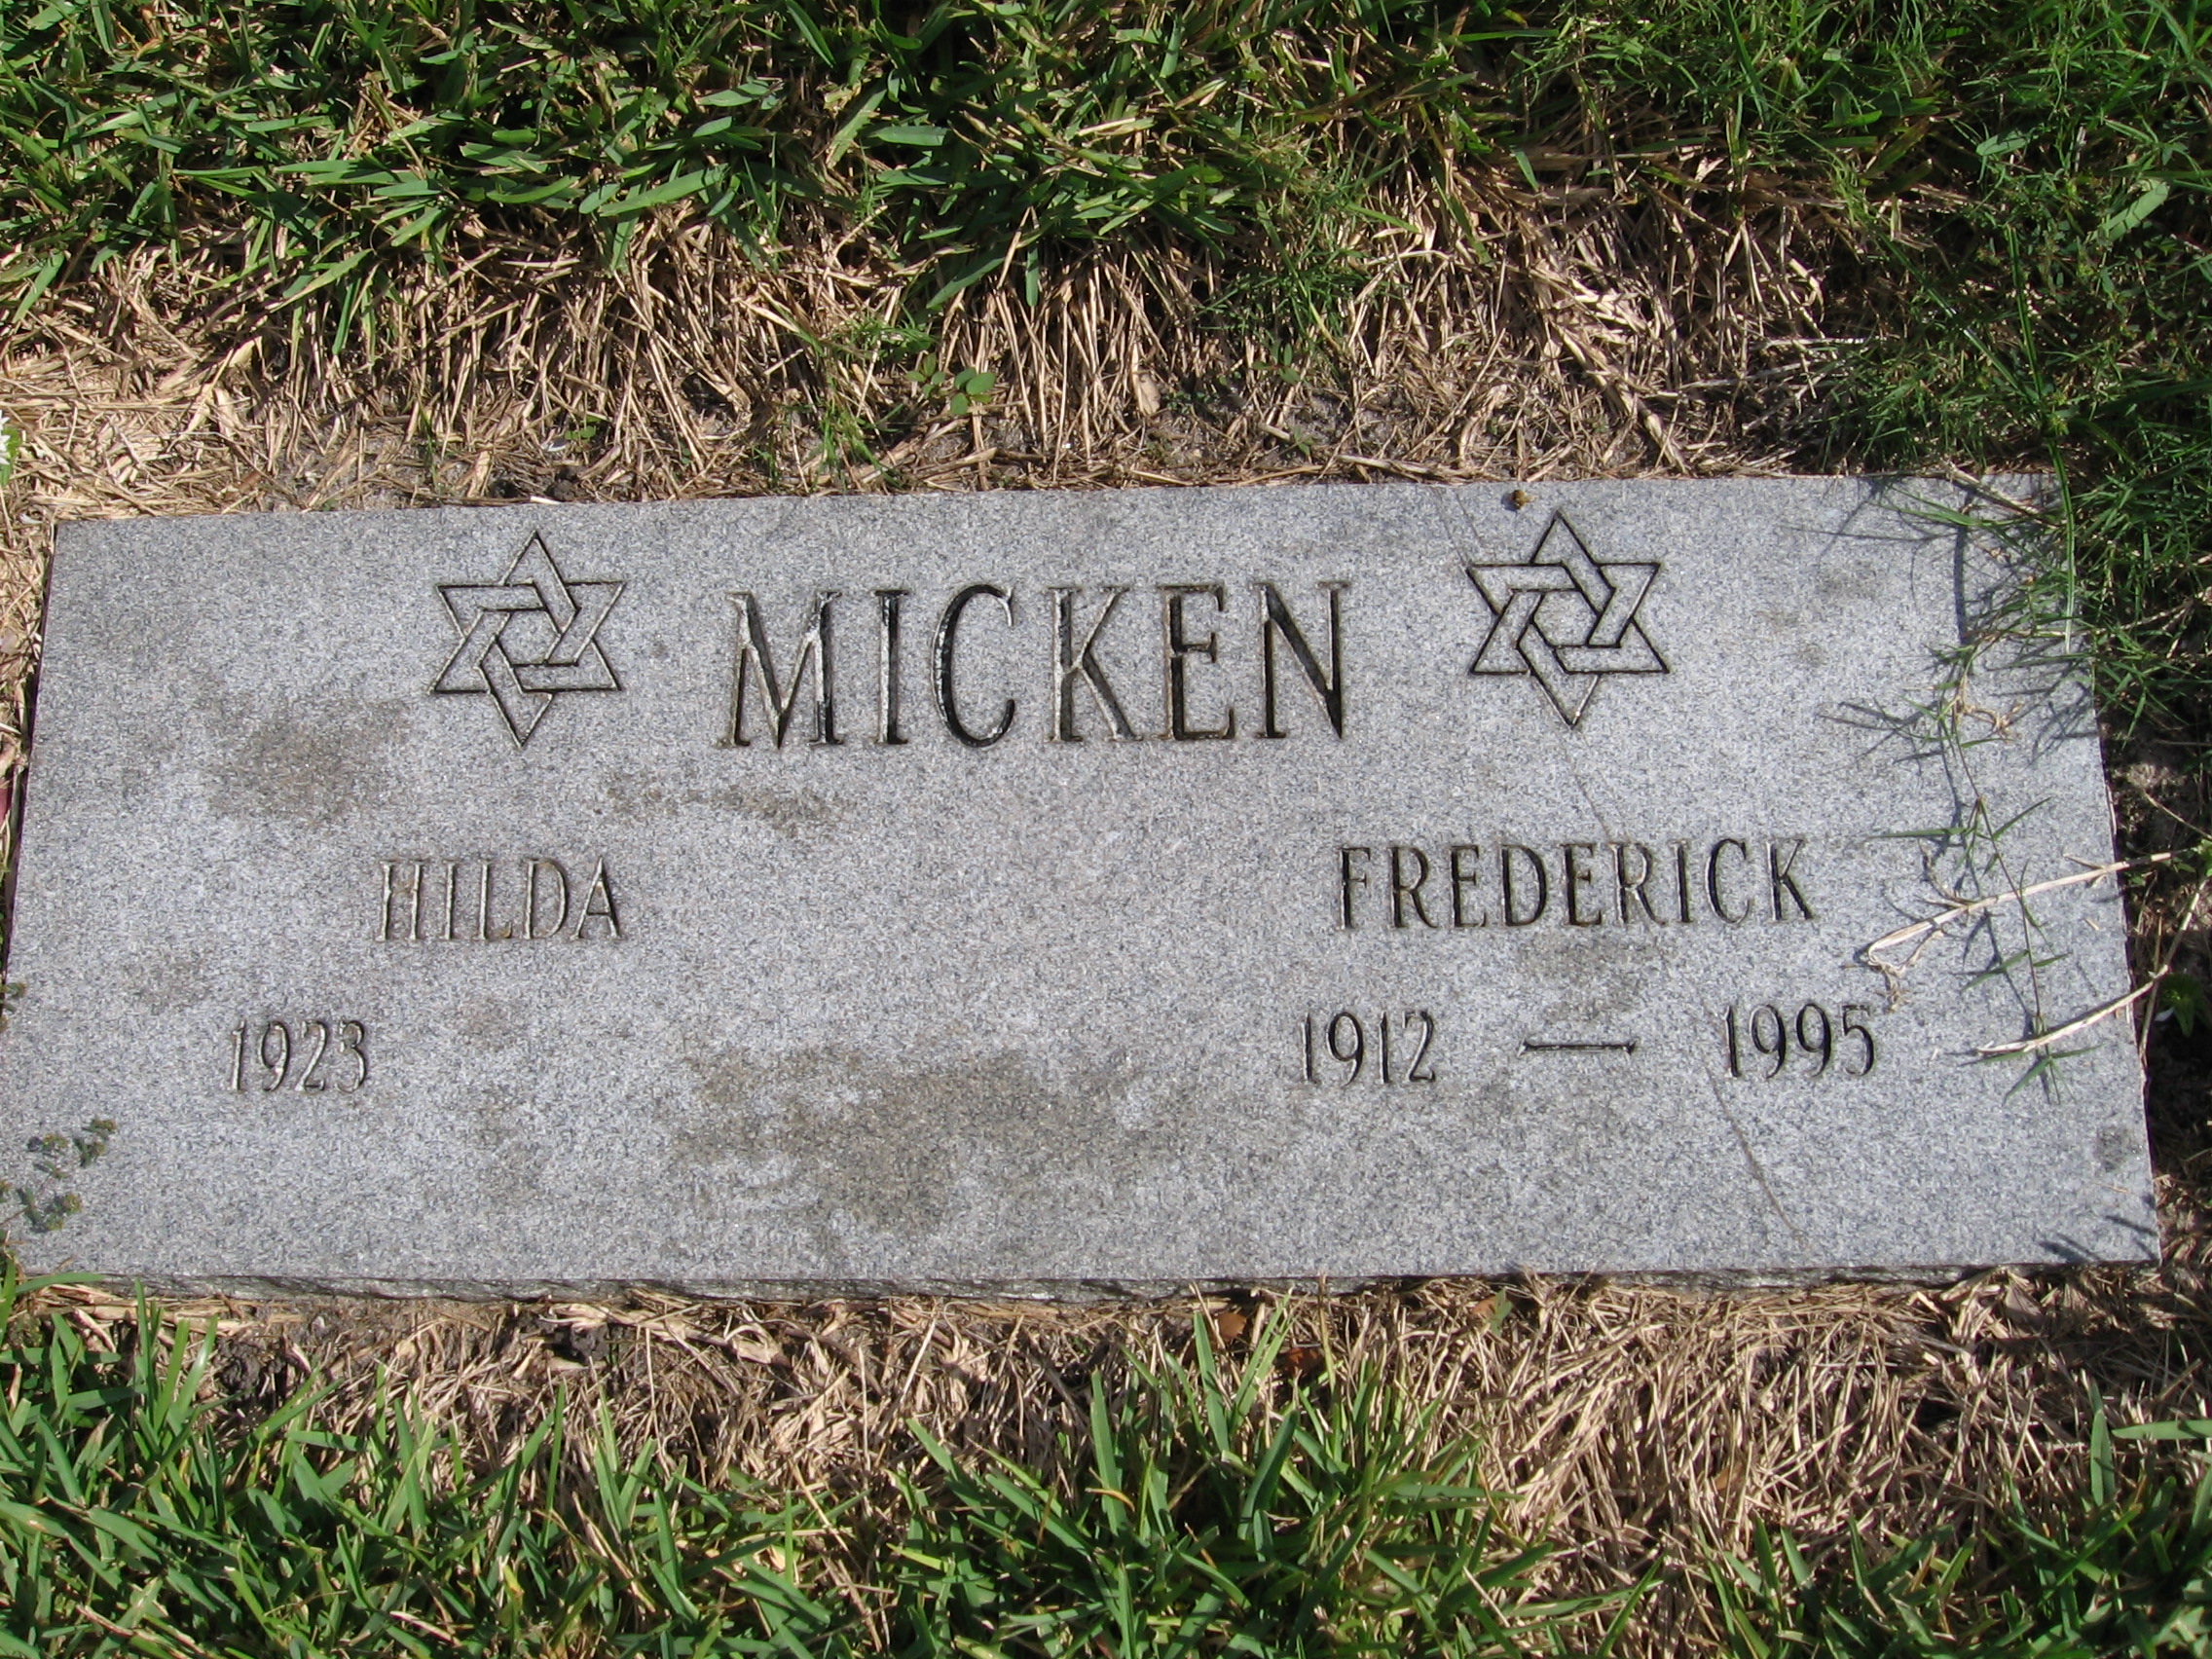 Frederick Micken